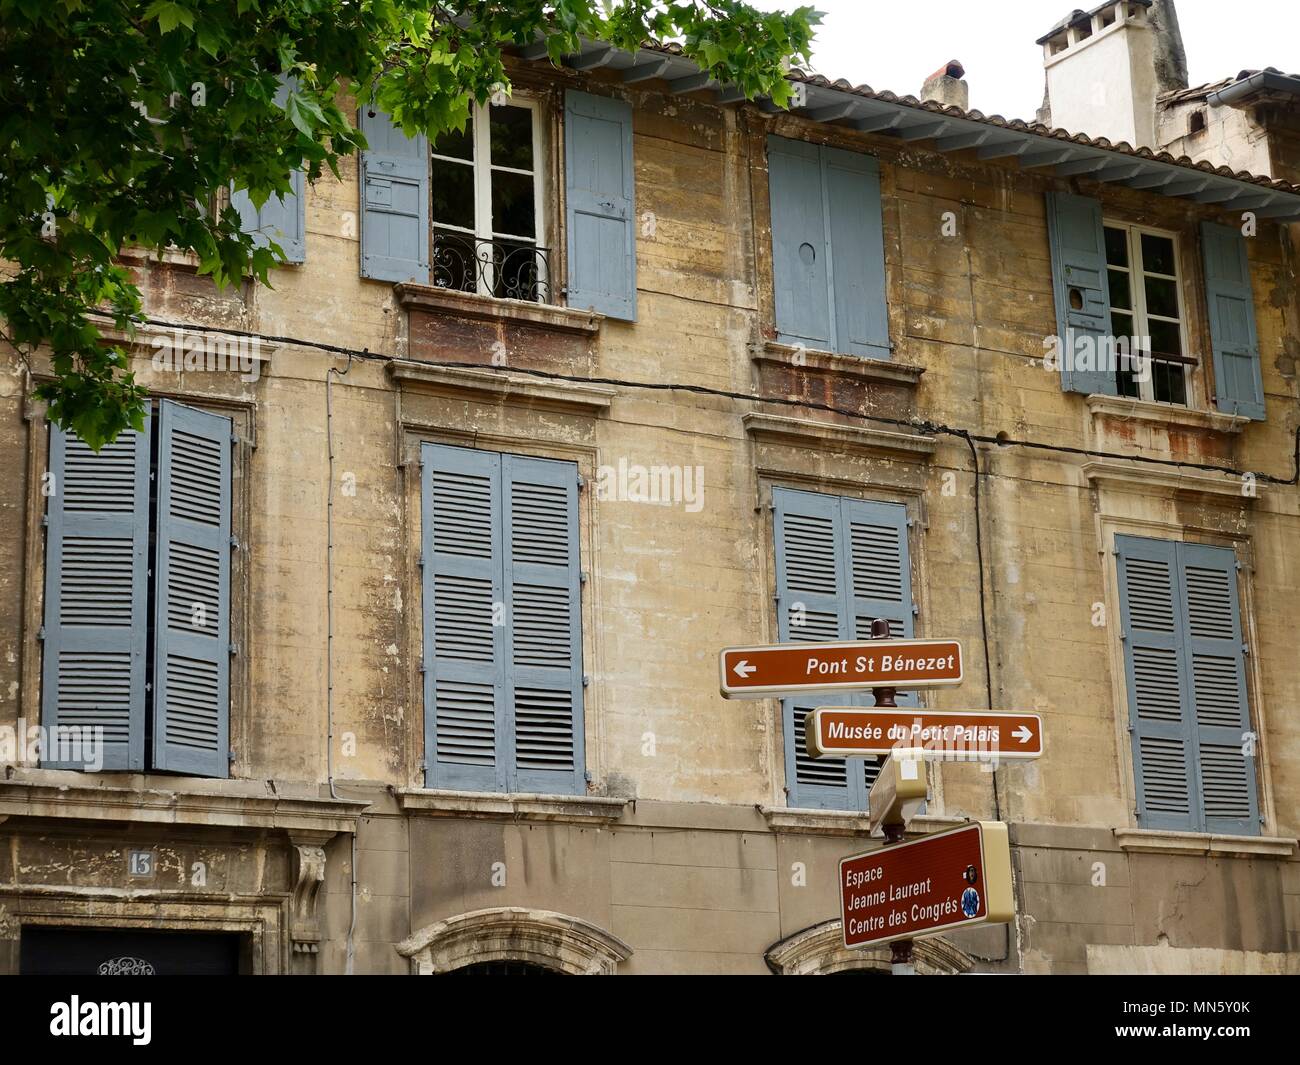 Segnaletica direzionale si trova di fronte a un tradizionale, weathered costruzione in pietra con persiane di colore grigio. Avignon, Francia Foto Stock